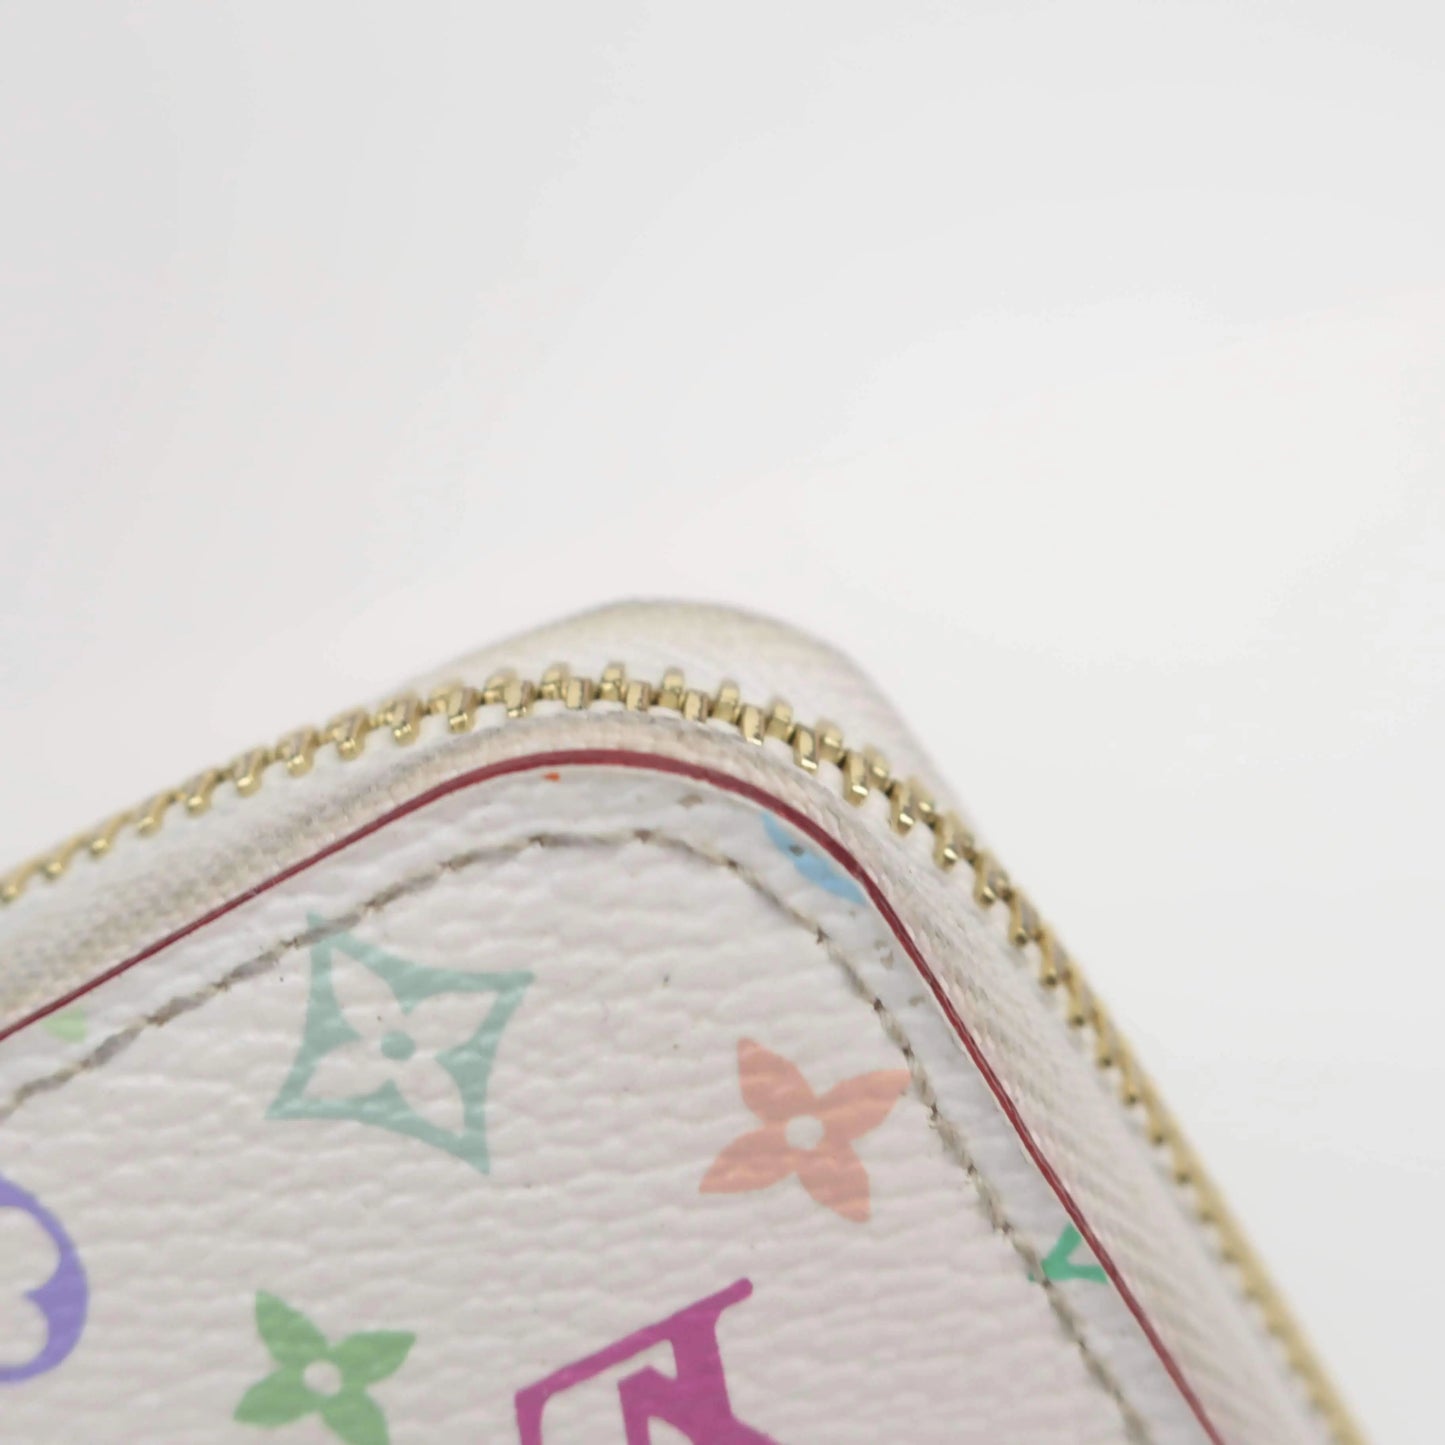 Louis Vuitton Multicolore Monogram Pattern Coated Canvas Zippy Wallet -  White Wallets, Accessories - LOU796293